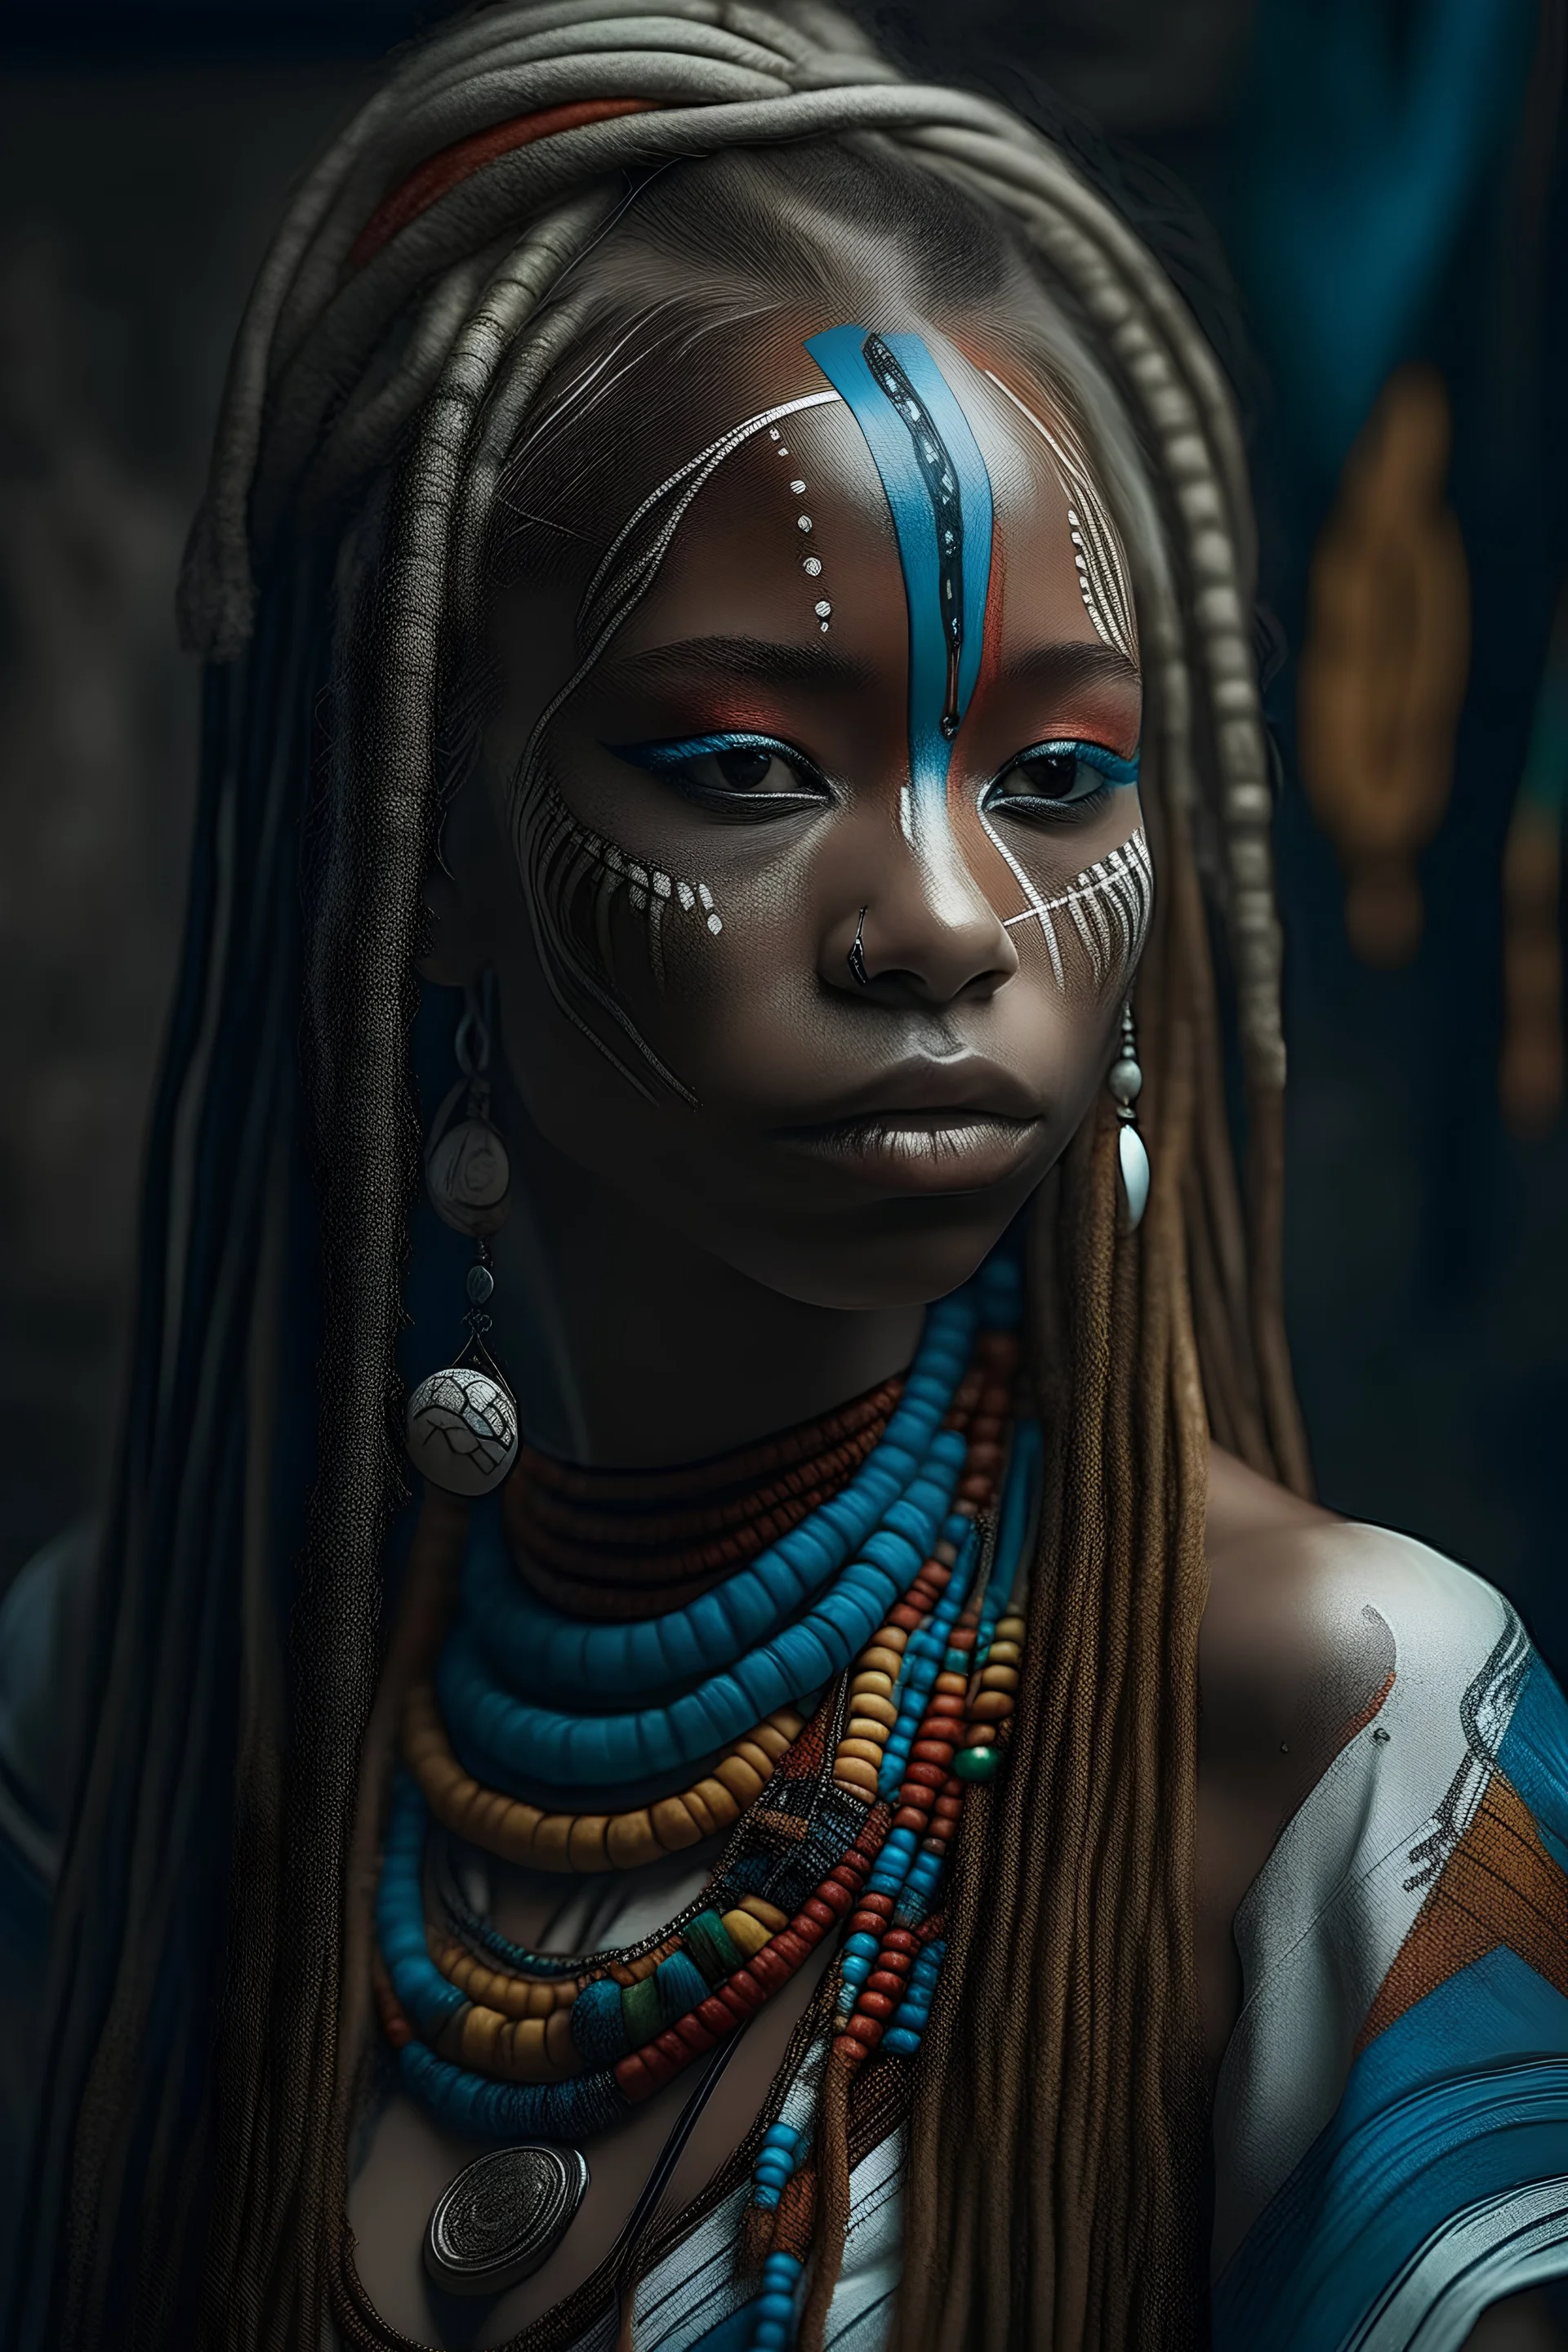 Porträt im Fantasy Stil von einer jungen, blinden Schamanin mit langen weißen Zöpfen und schwarzer Hautfarbe. Sie trägt ein buntes Kleid und hat Tätowierungen auf dem Gesicht.